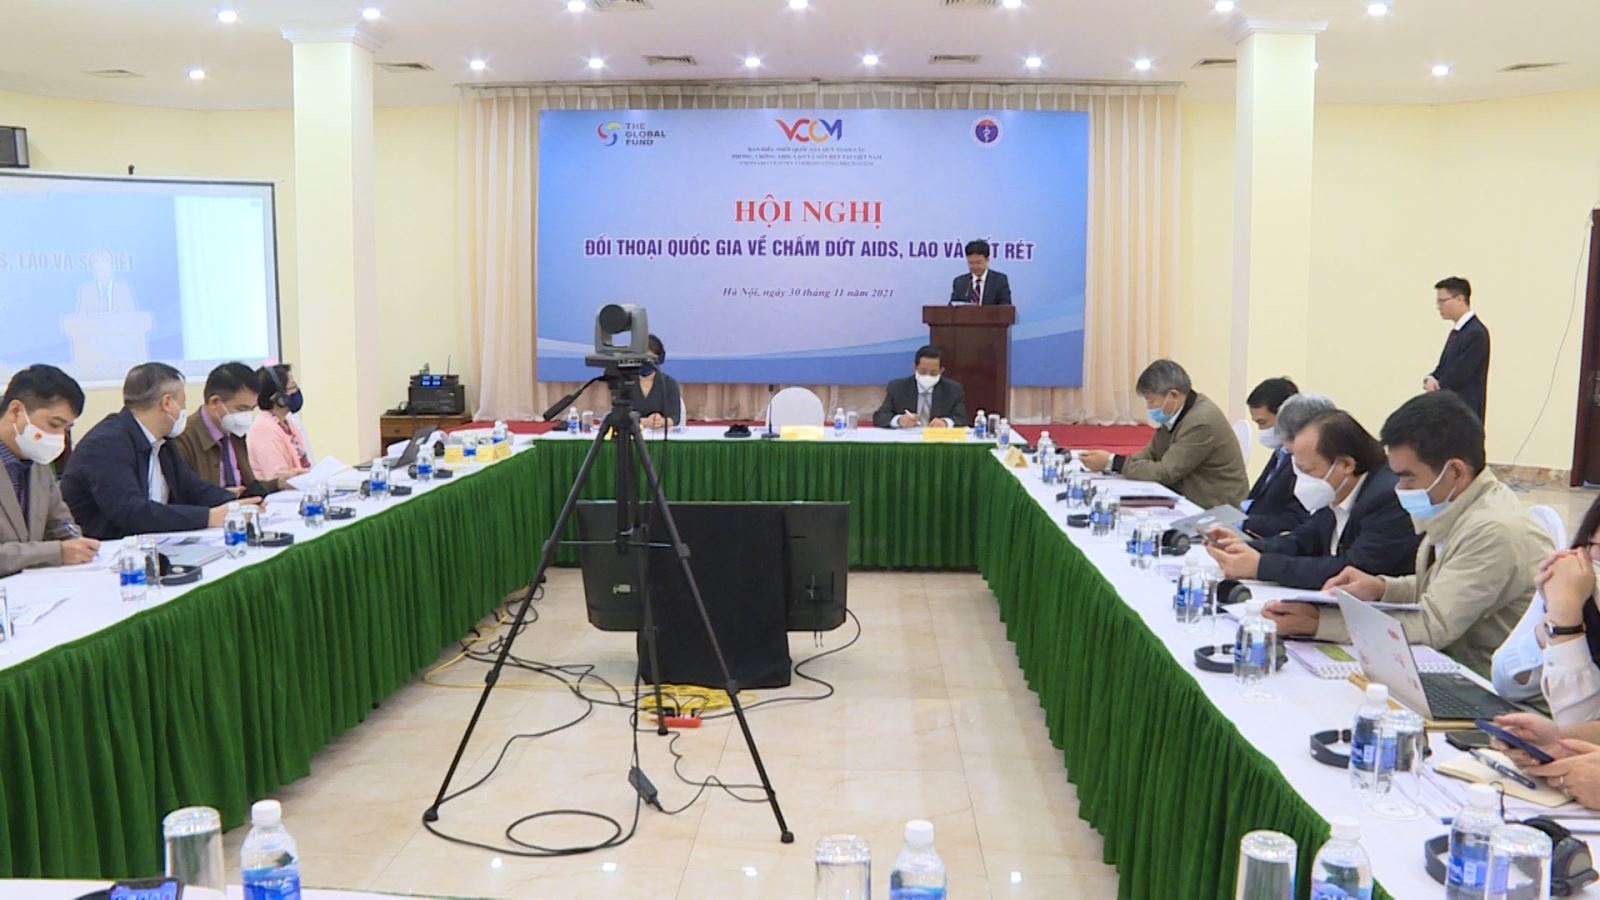 Hội nghị đối thoại quốc gia về chấm dứt Aids, Lao và sốt rét